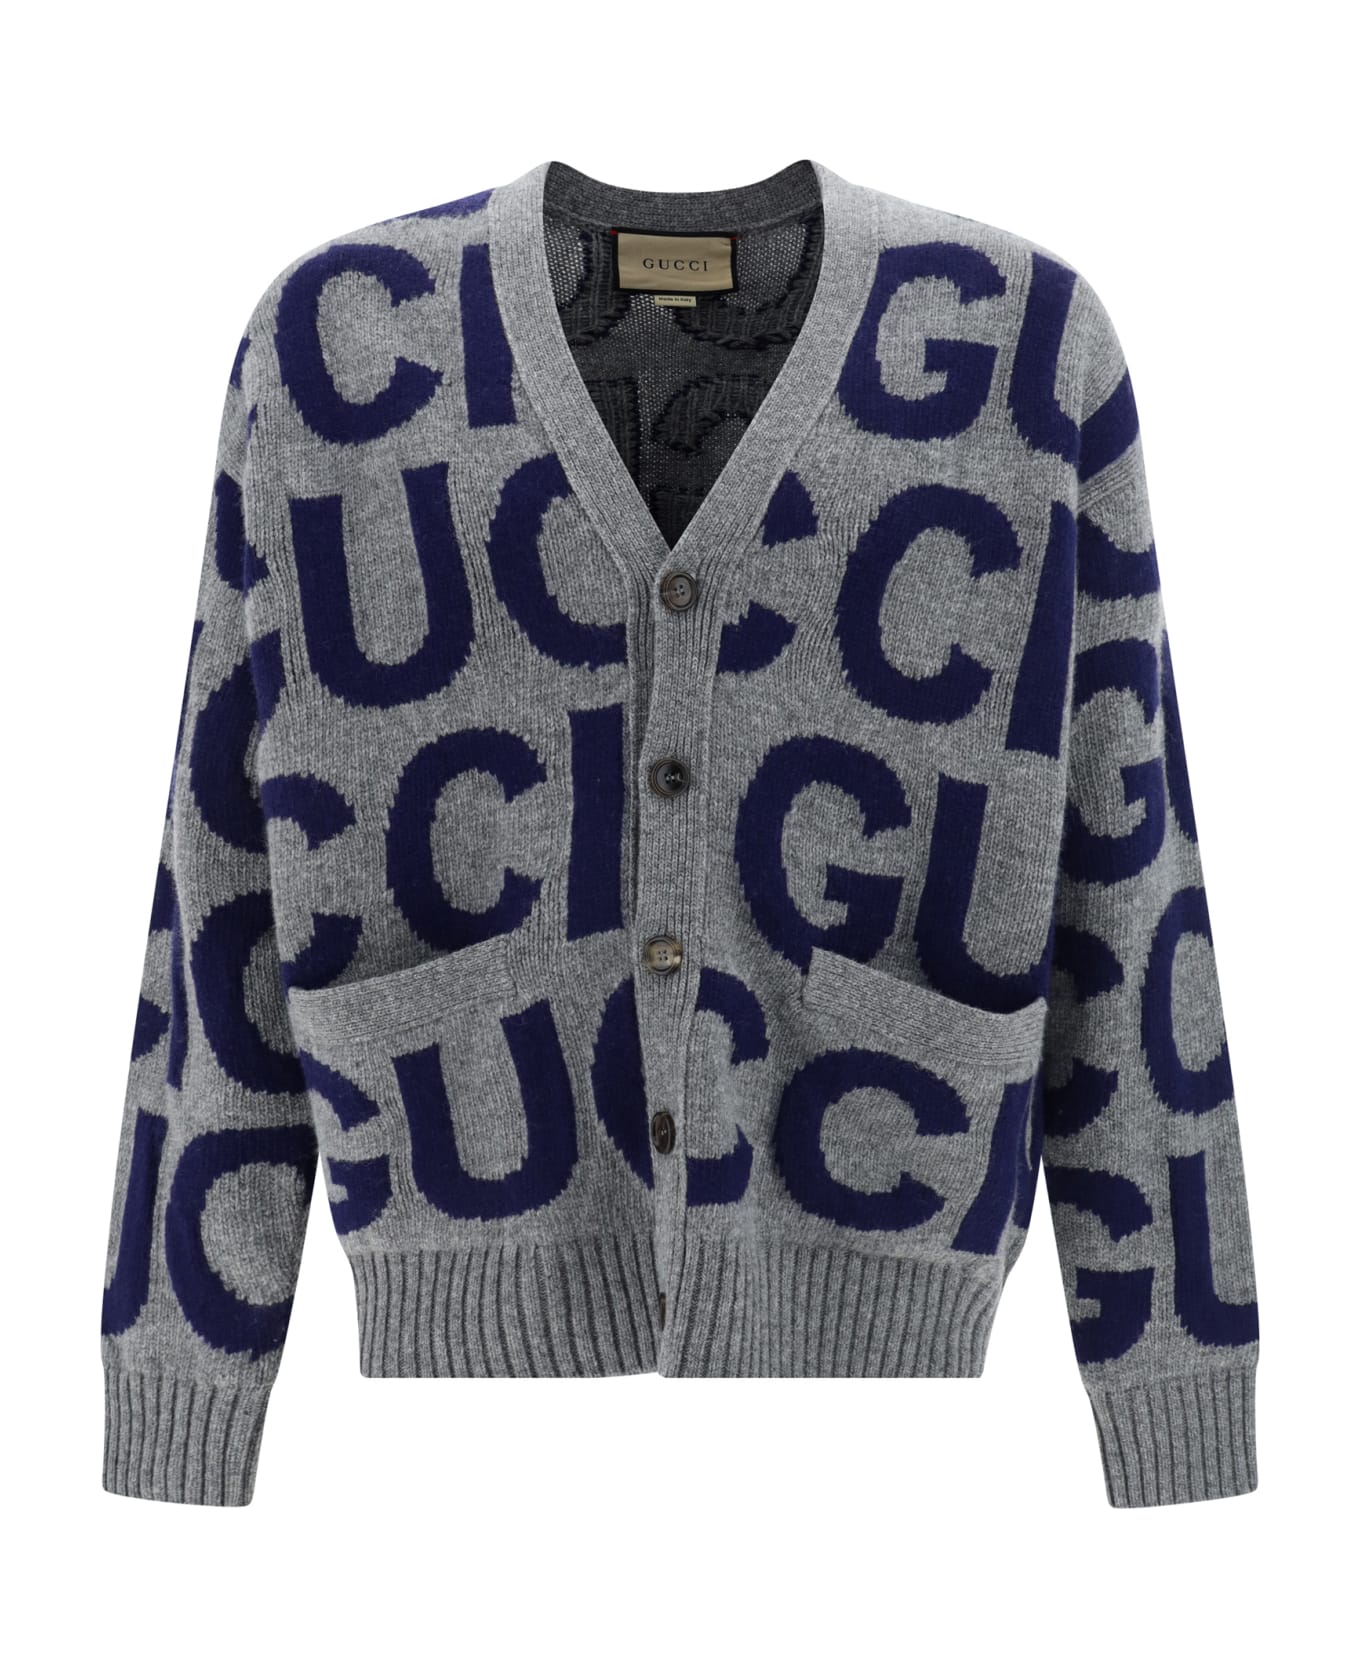 Gucci Cardigan - Grey/blue カーディガン